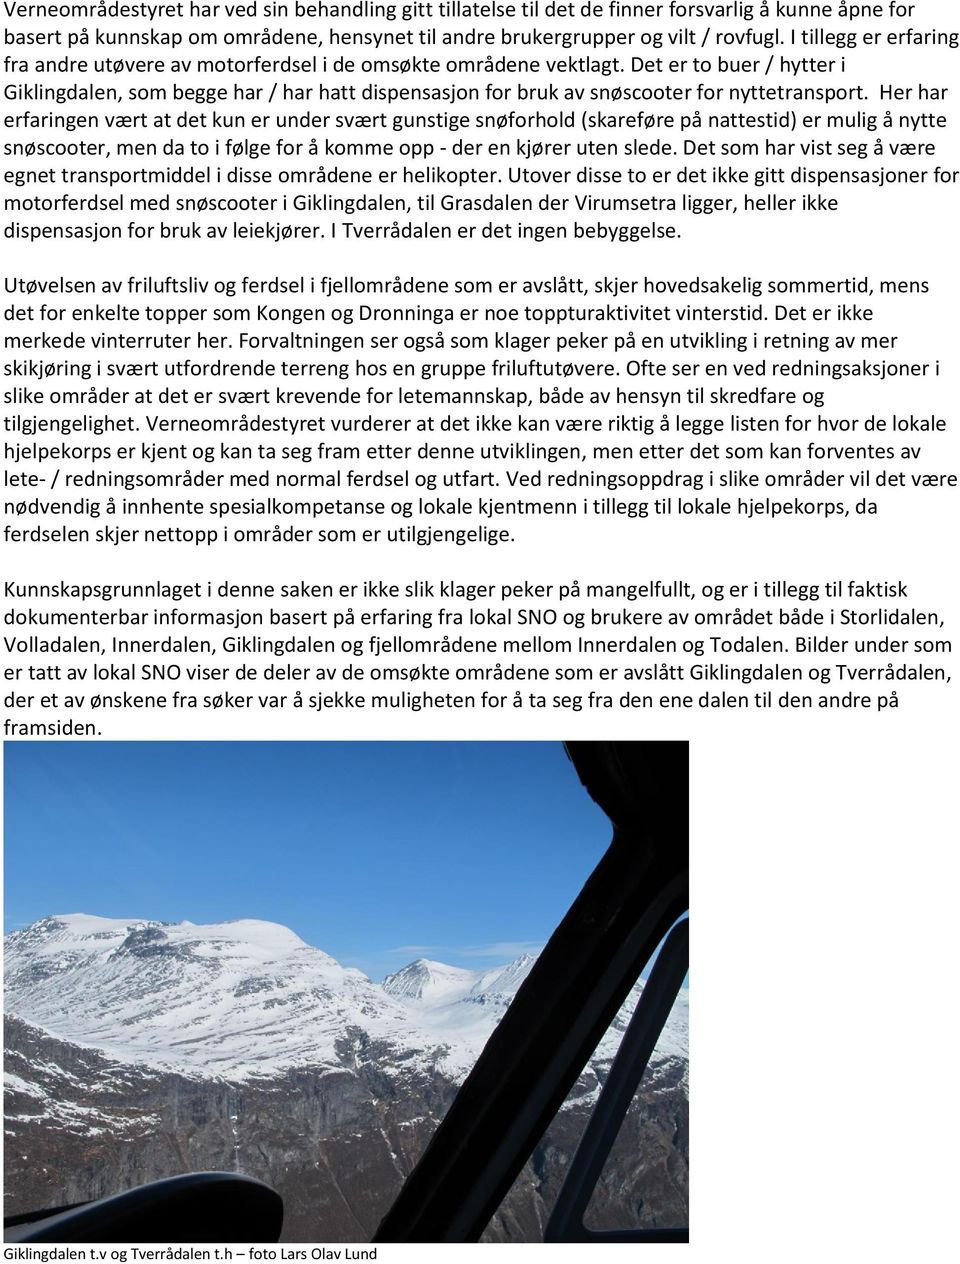 Det er to buer / hytter i Giklingdalen, som begge har / har hatt dispensasjon for bruk av snøscooter for nyttetransport.